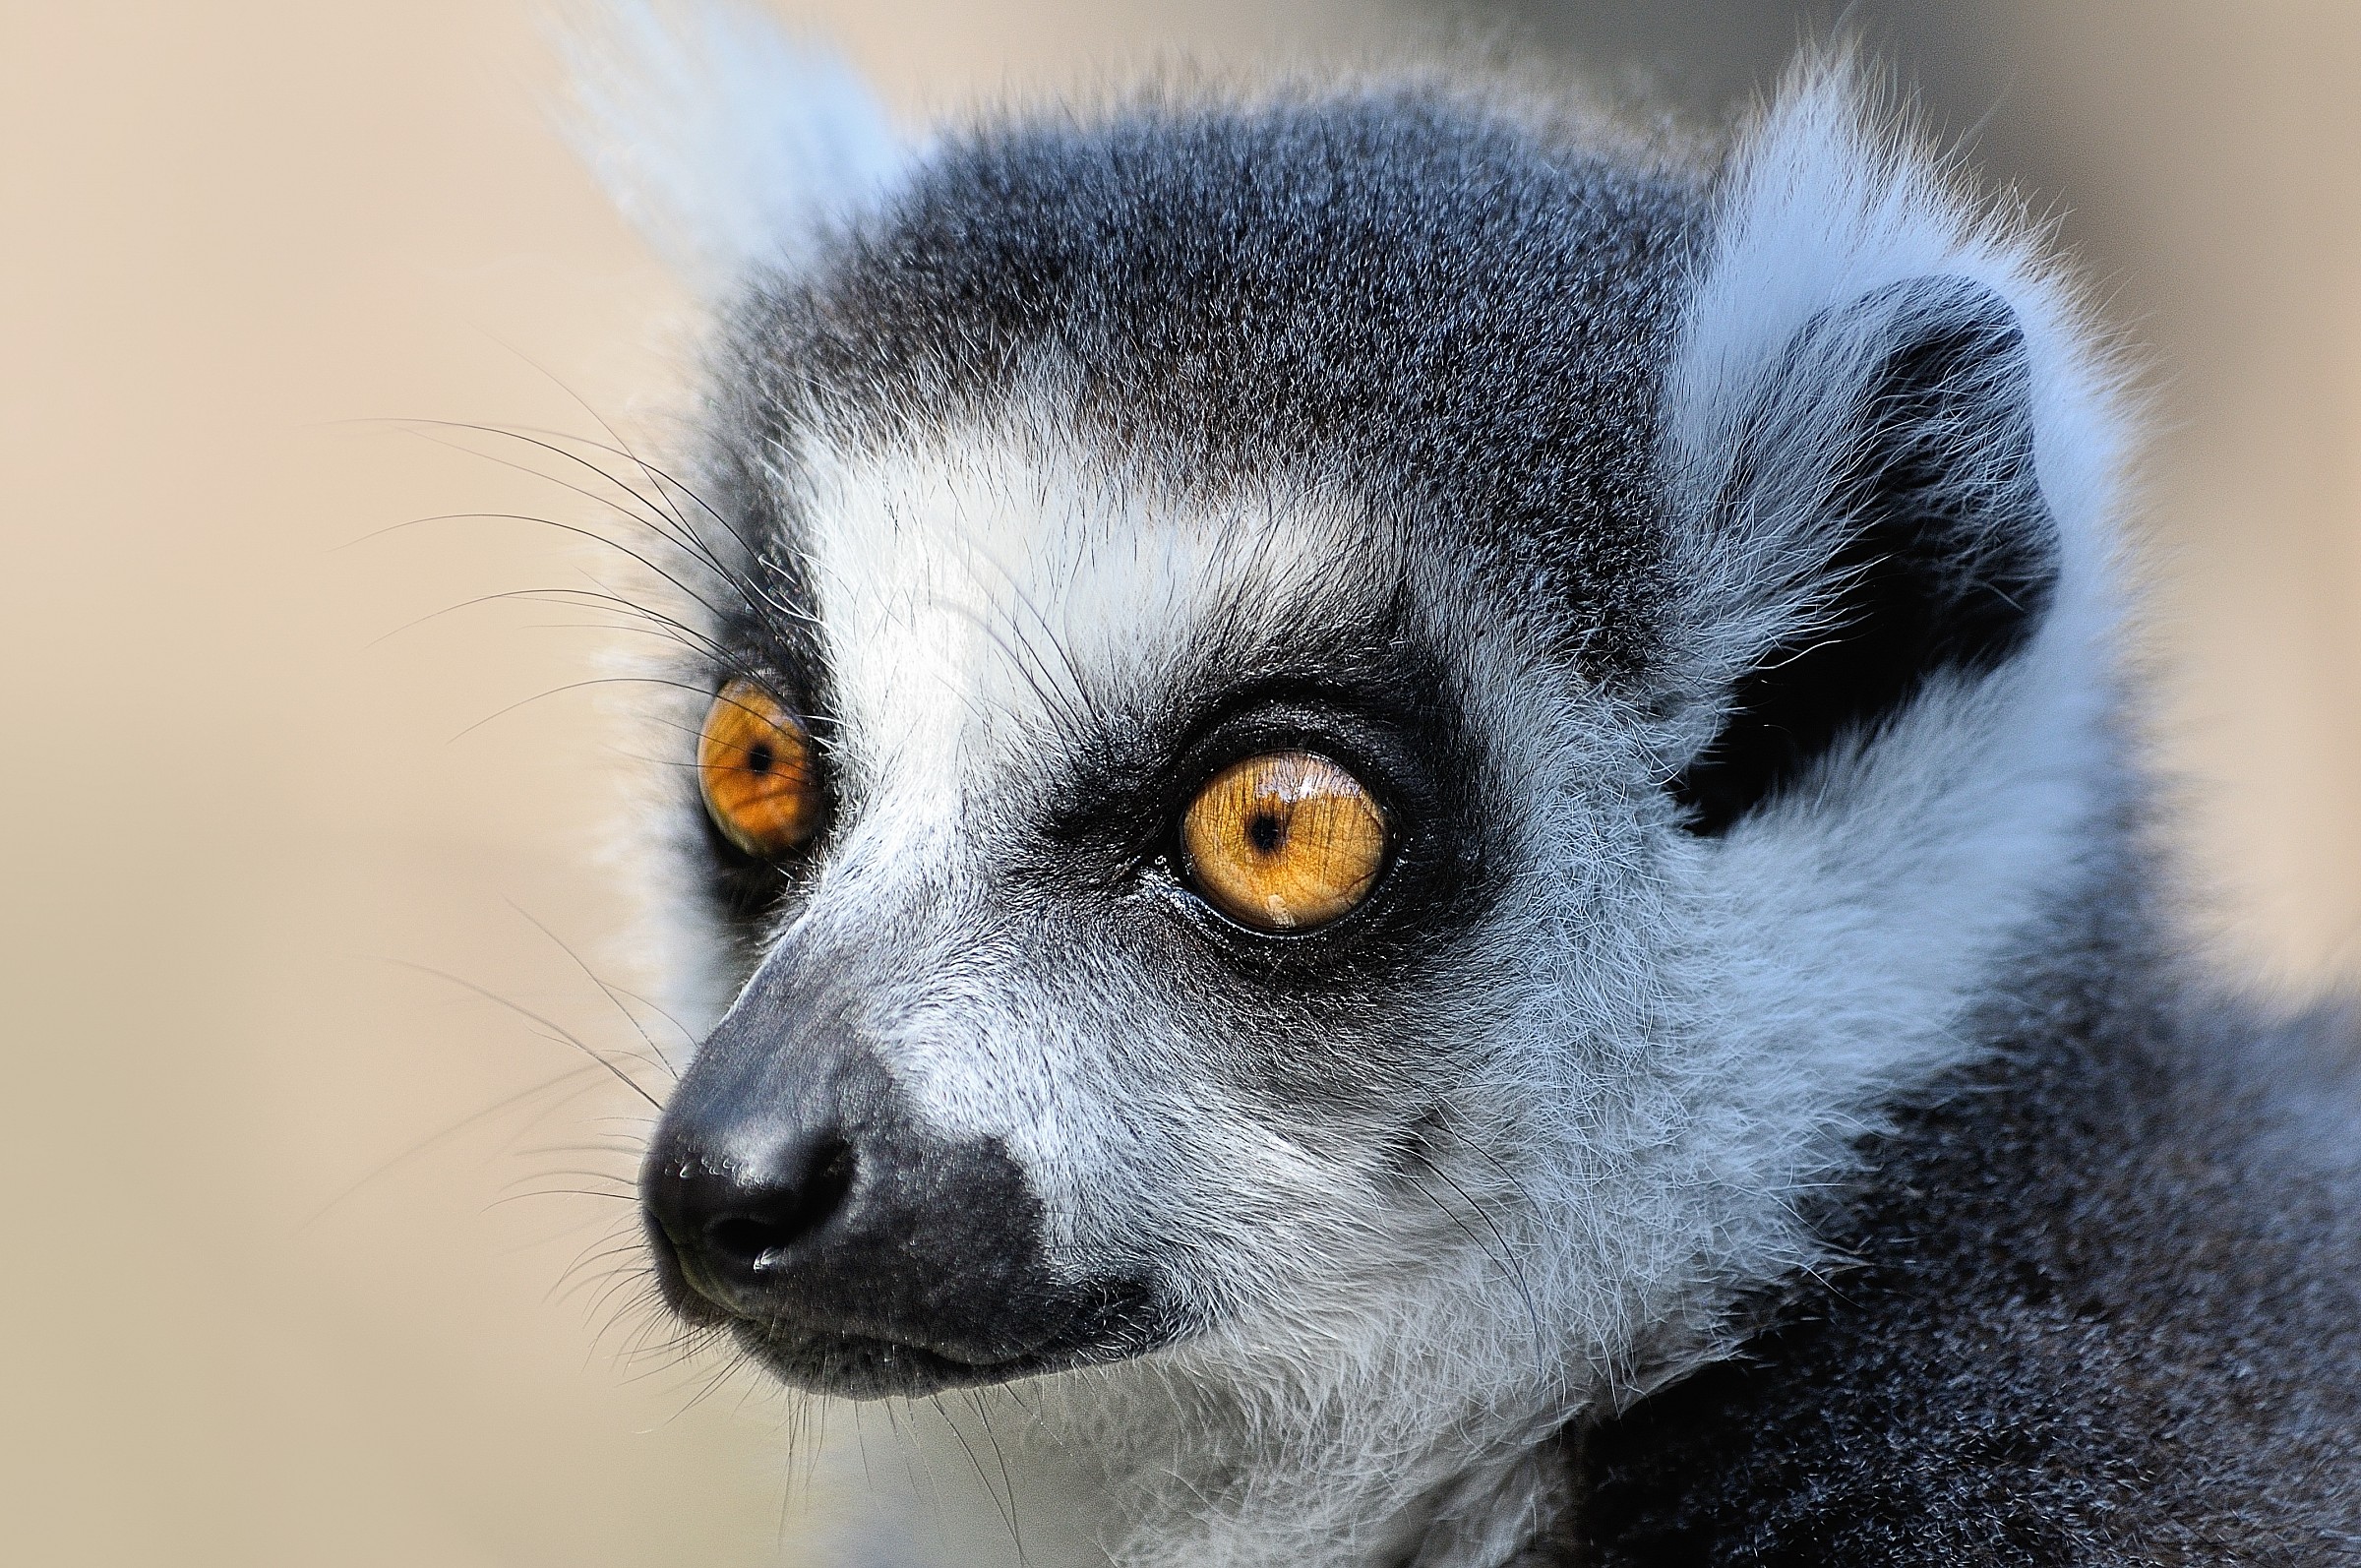 Lemur vision...